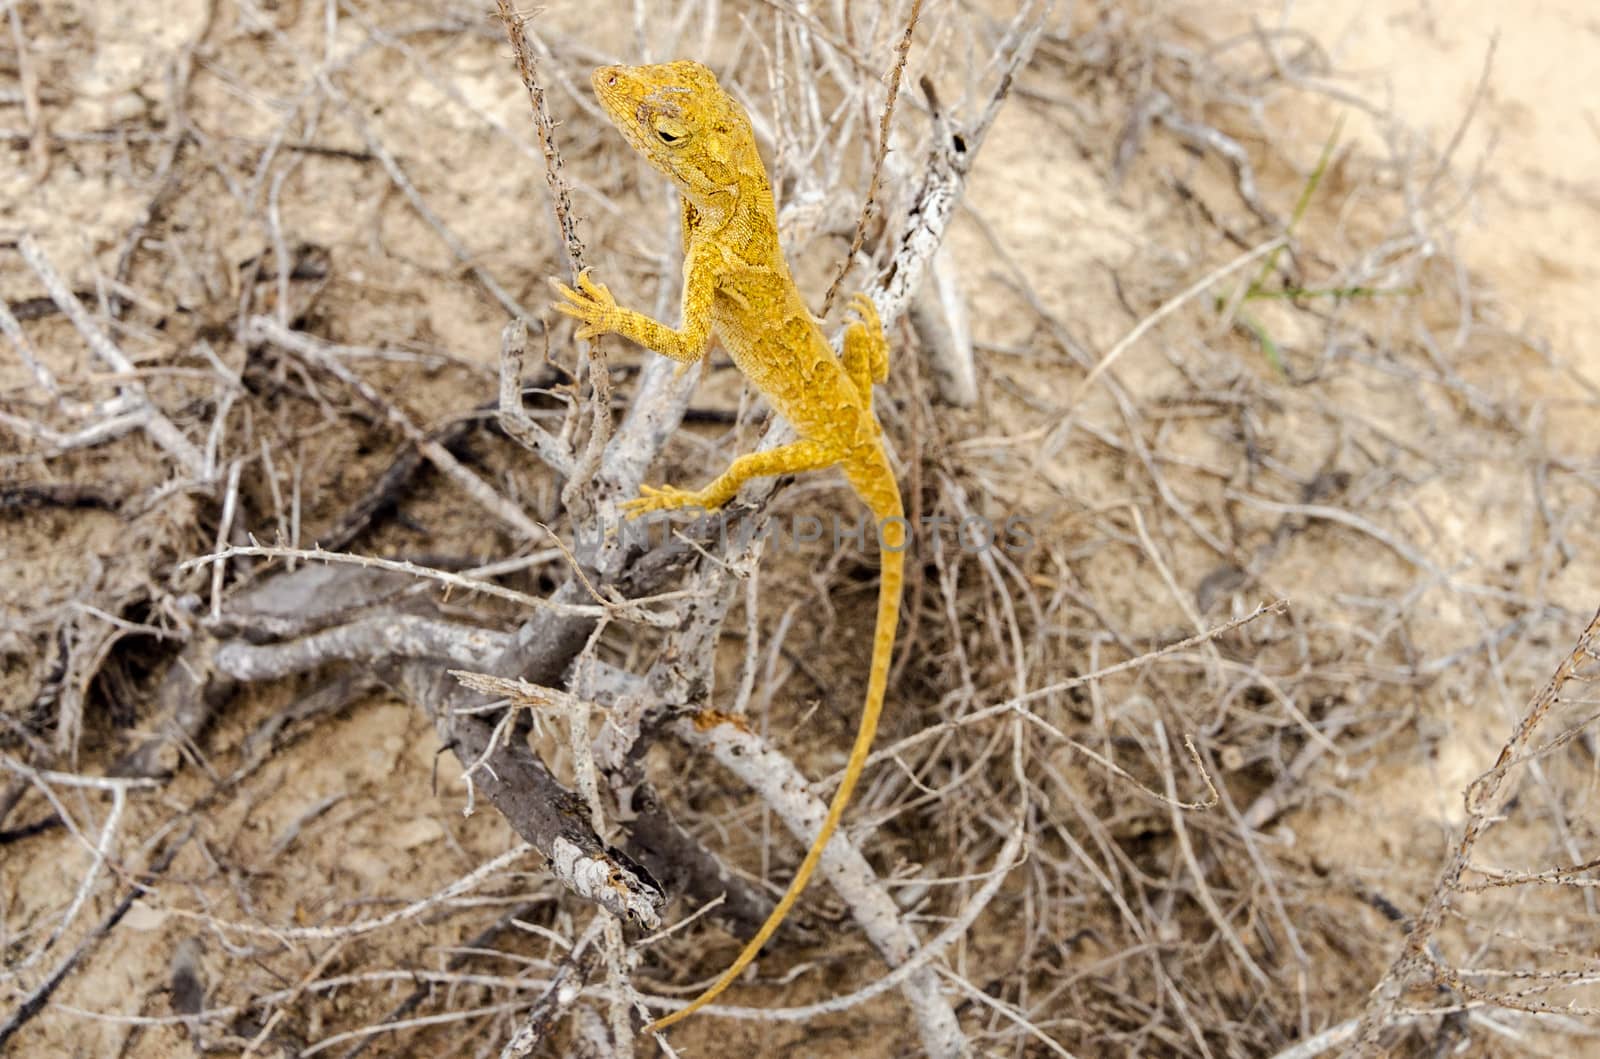 Small yellow lizard in La Guajira, Colombia